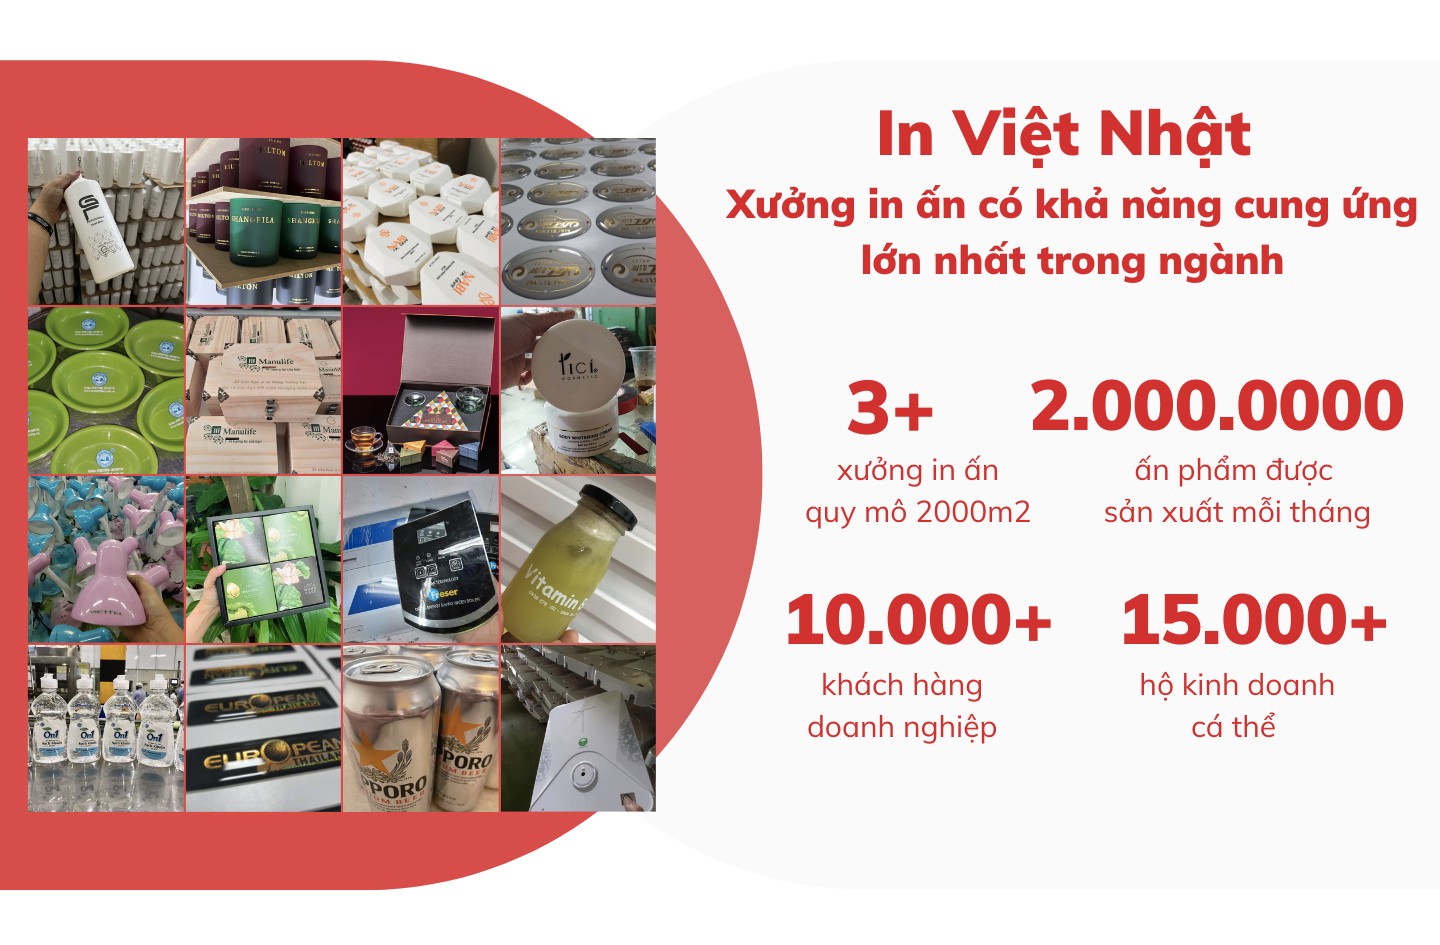 Giới thiệu về In Việt Nhật